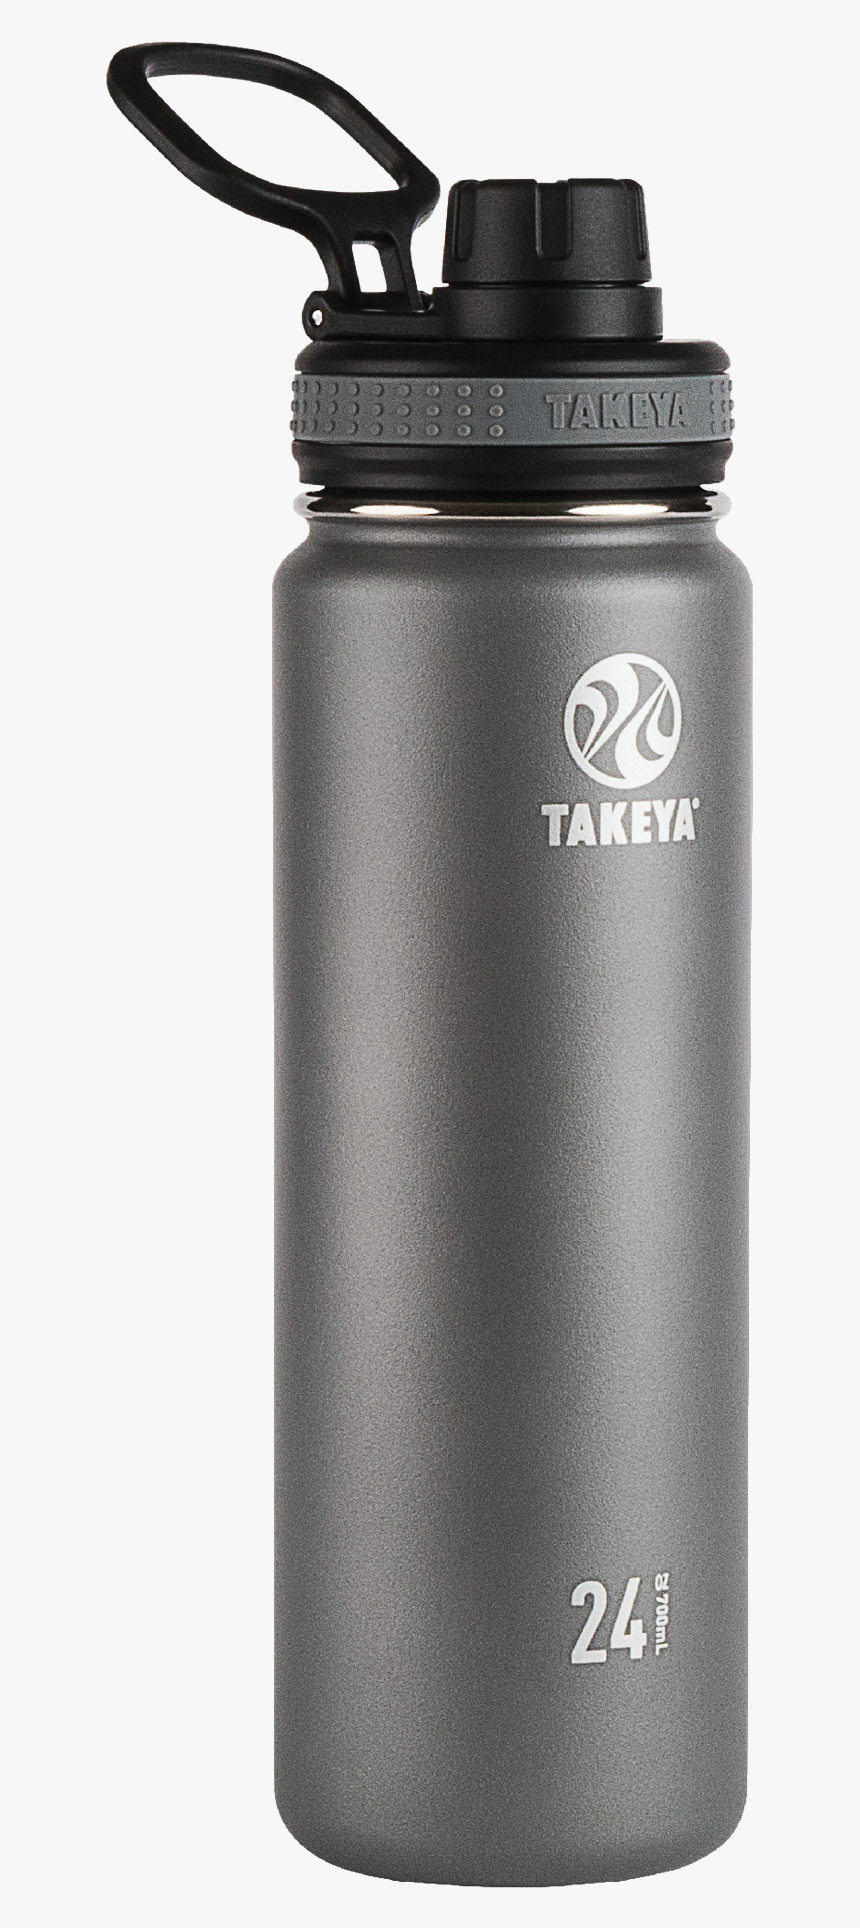 Takeya Water Bottle, HD Png Download, Free Download